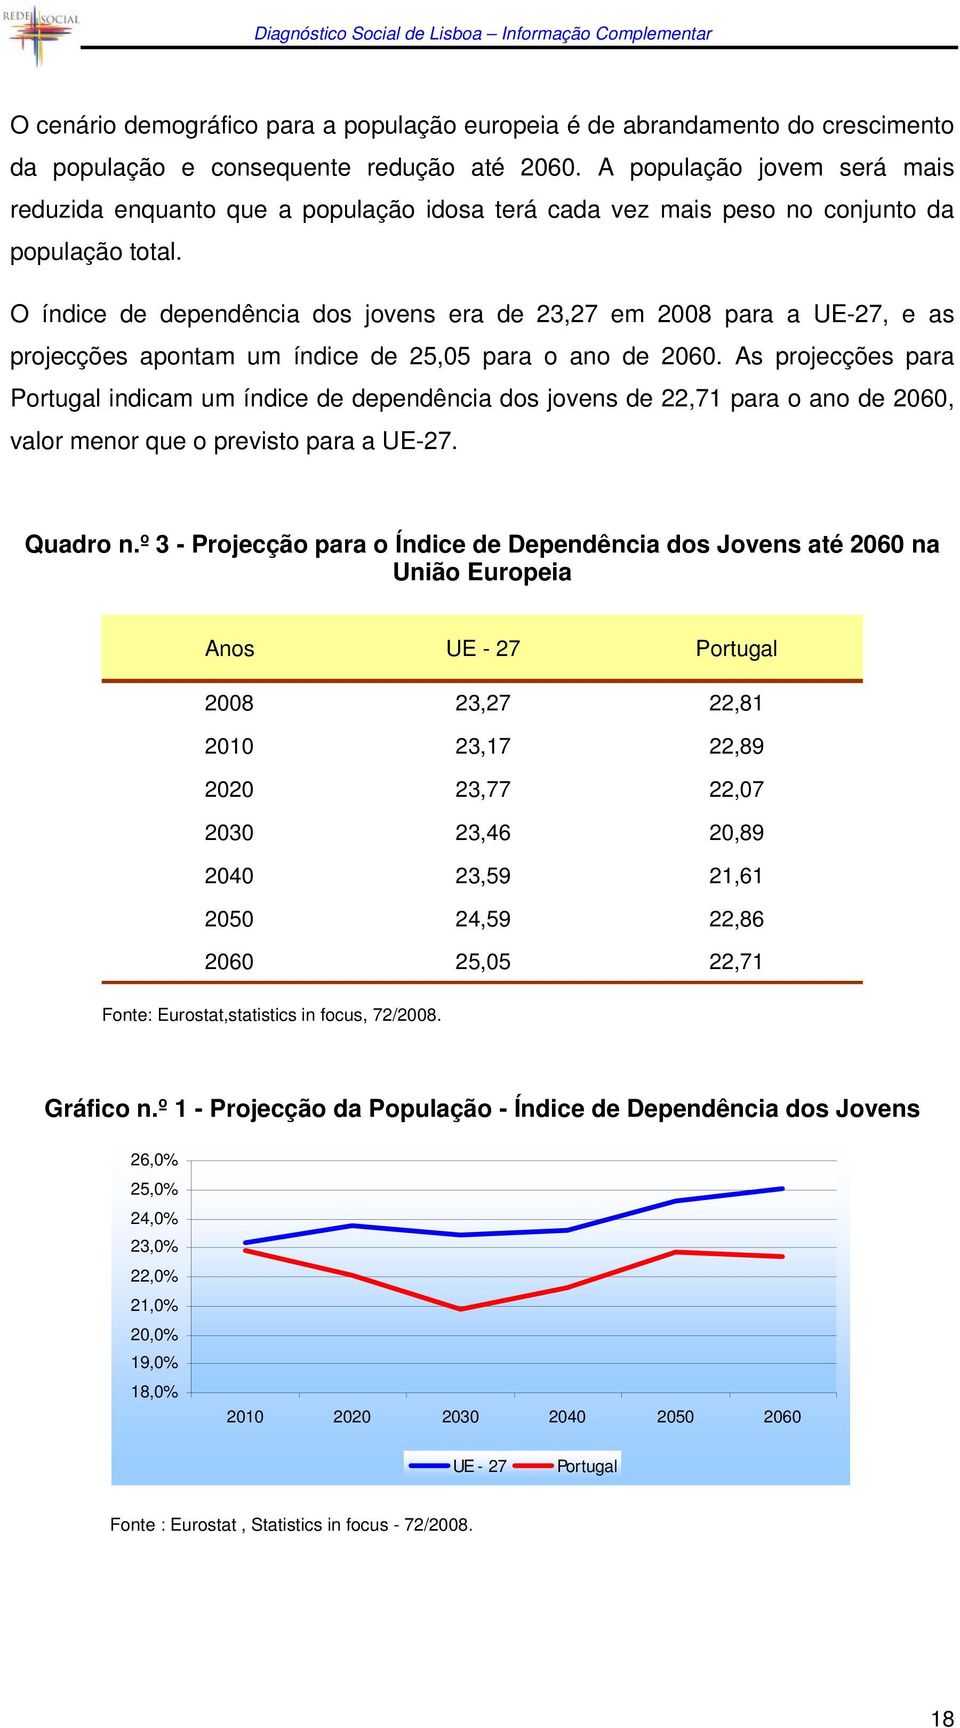 O índice de dependência dos jovens era de 23,27 em 2008 para a UE-27, e as projecções apontam um índice de 25,05 para o ano de 2060.